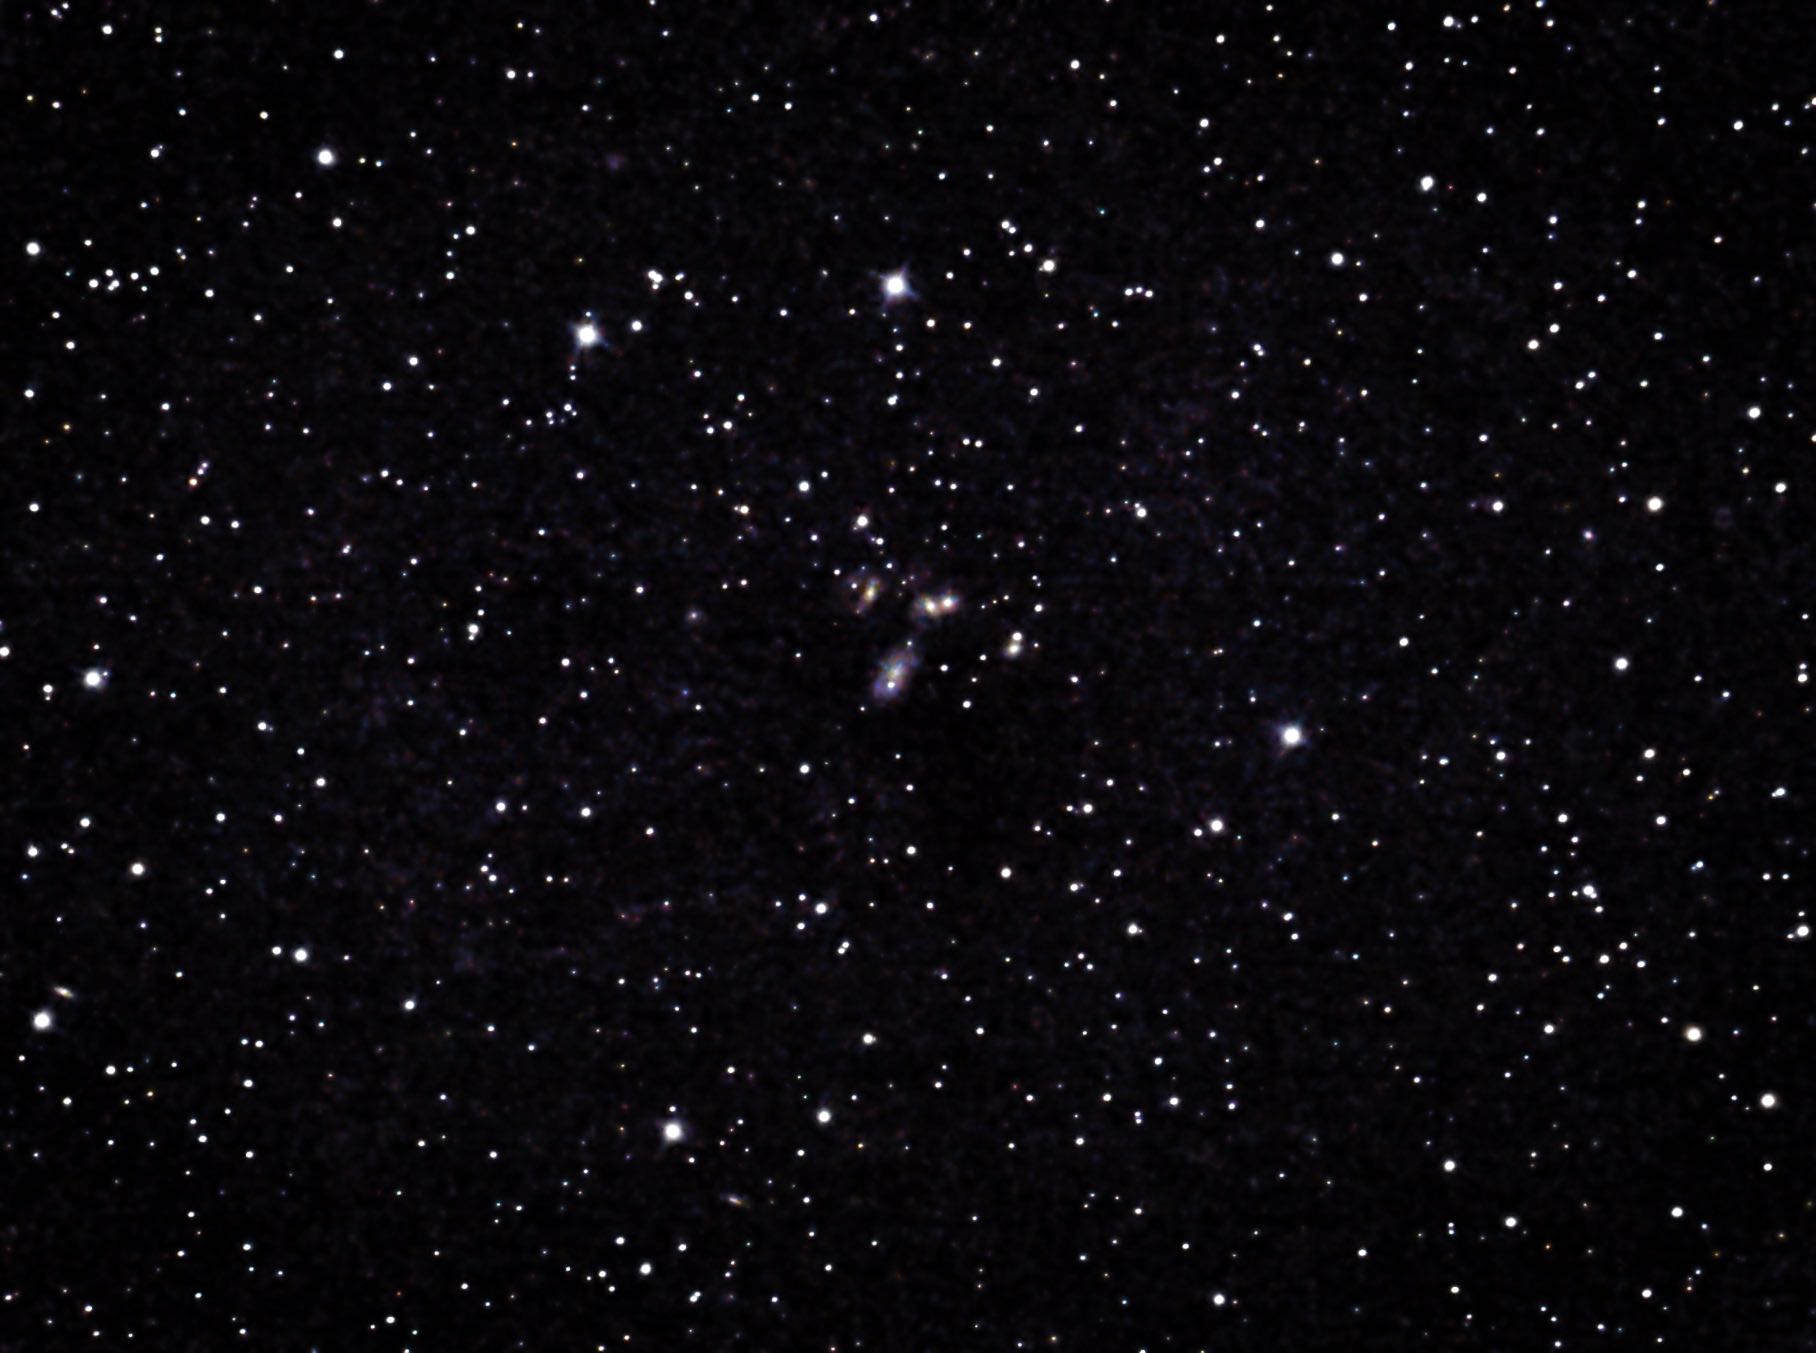 ARP 319 NGC 7320 STEPHANS QUINTET GX PEGASUS 12X25 A40 M0 W0SE S4-3 RC8+IMX294+UVIR.jpg